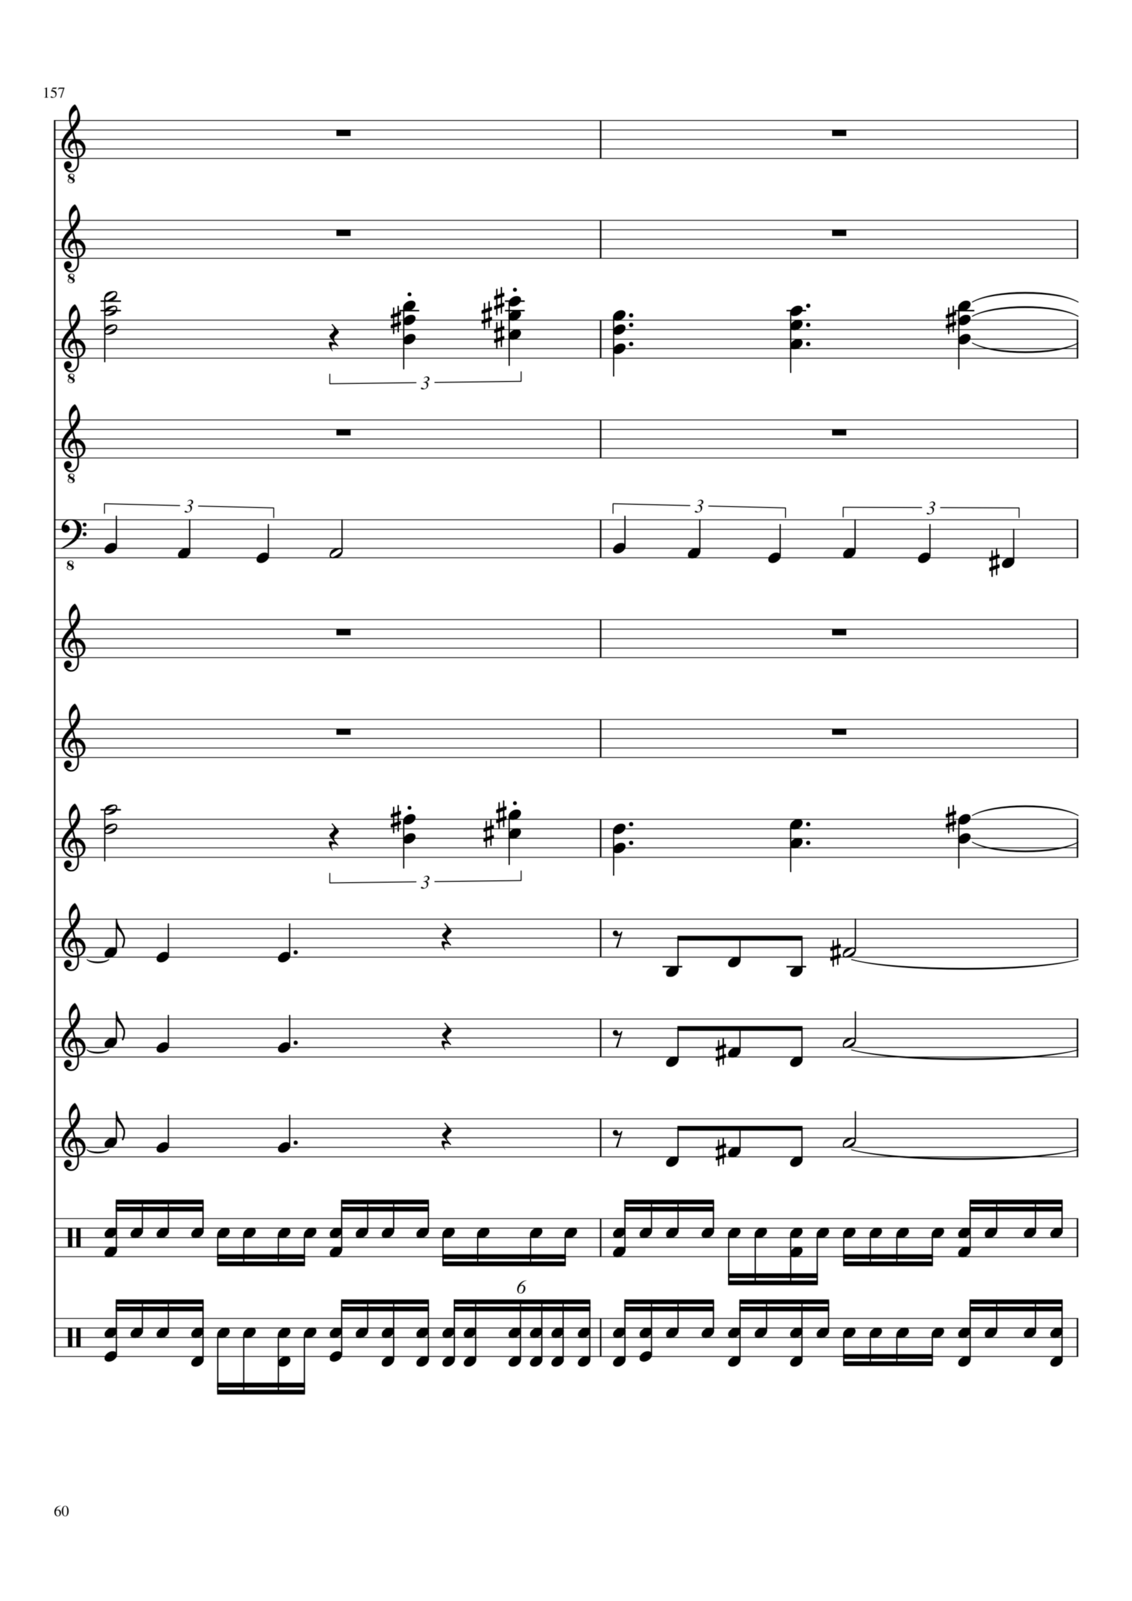 Vospominaniya o byiloy lyubvi slide, Image 19